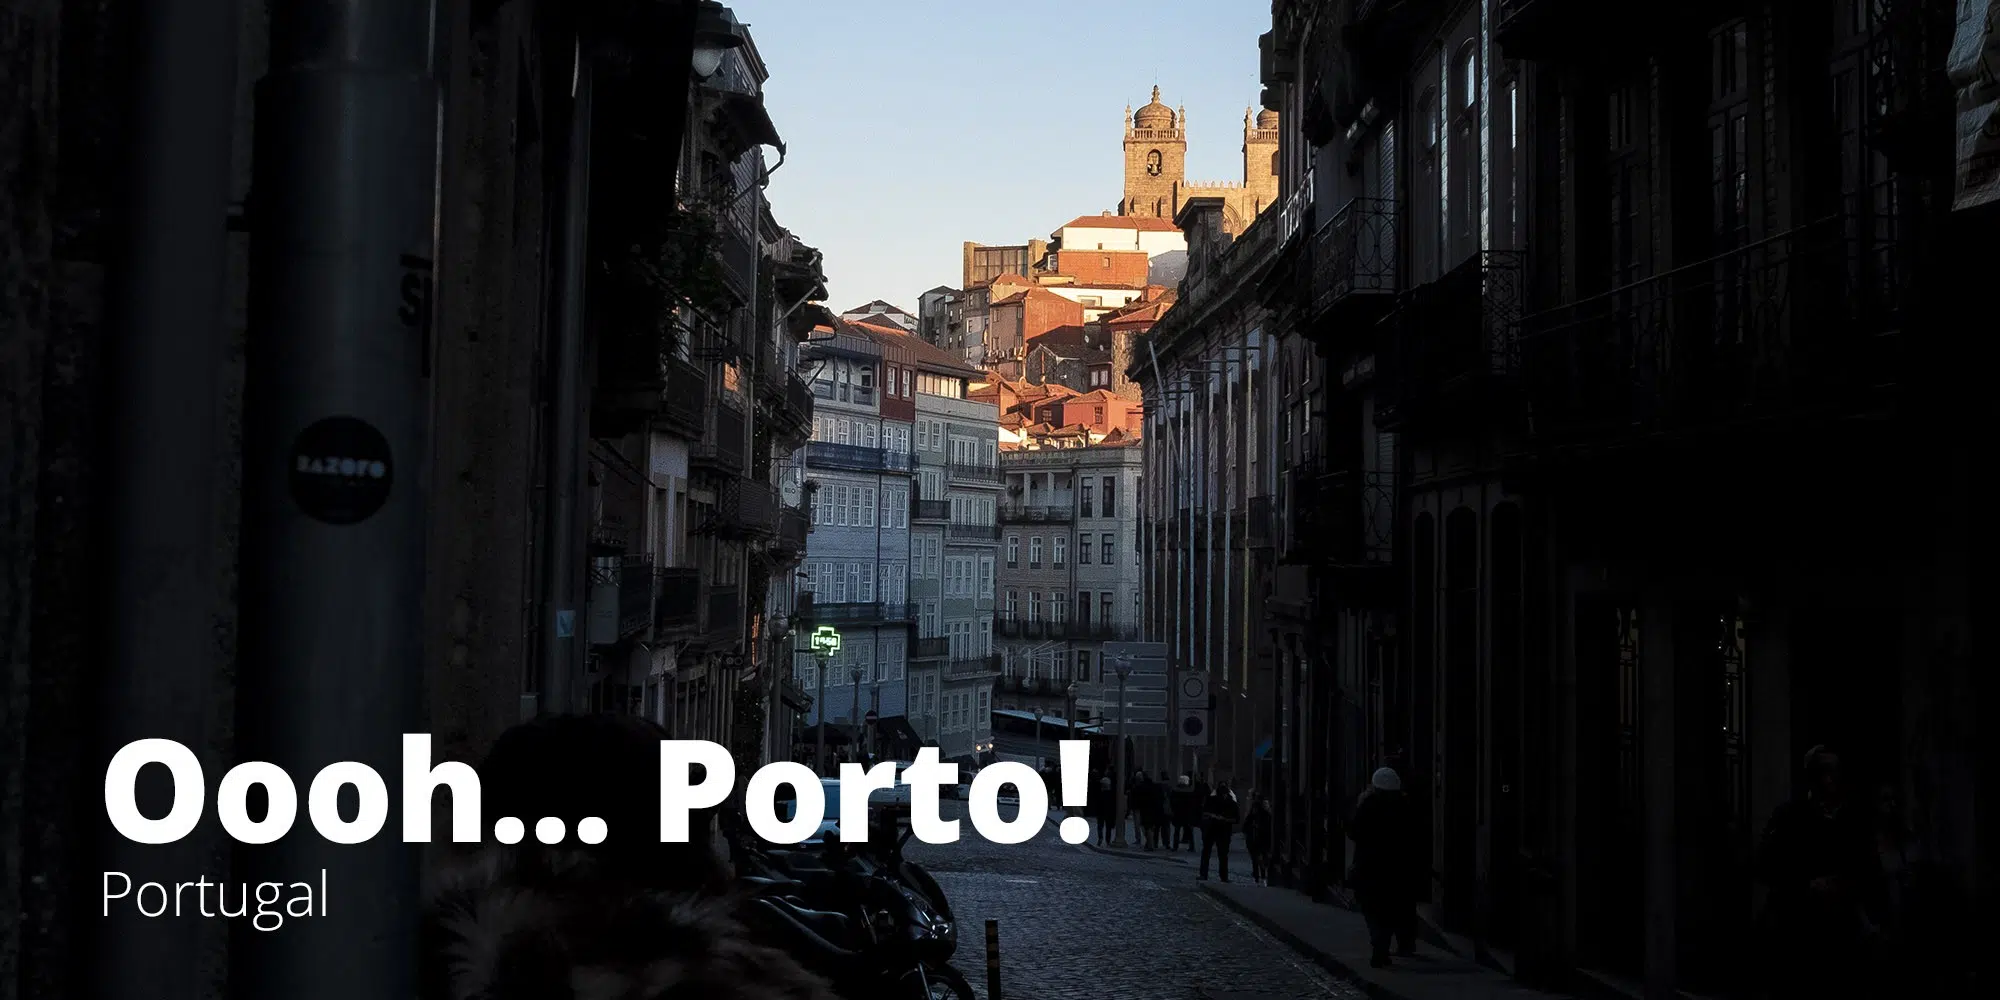 Fotografía de un atardecer en el centro histórico de la ciudad de Oporto, Portugal